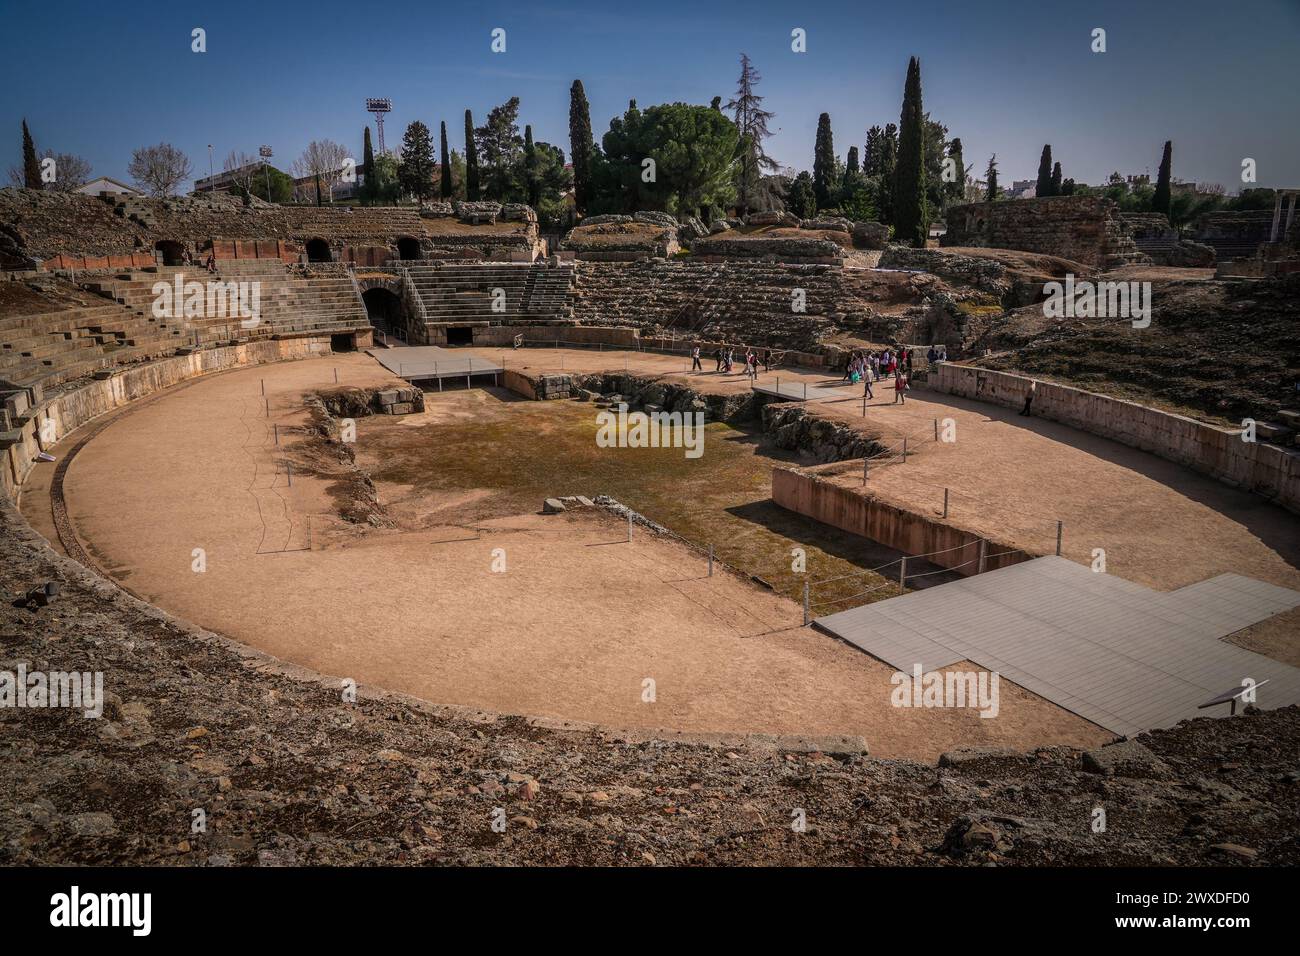 Das römische Amphitheater von Merida ist Teil des Archäologischen Emsembles von Merida, einer der größten archäologischen Stätten Spaniens. Stockfoto